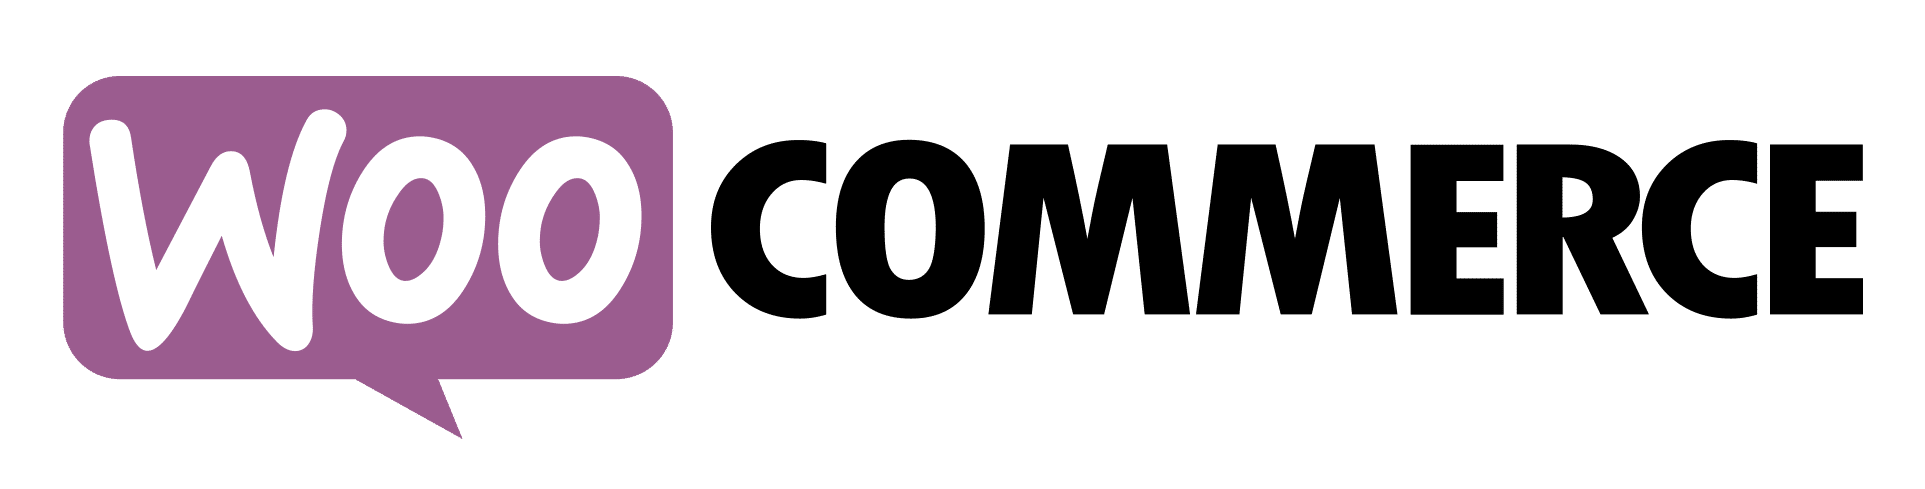 WooCommerce Logo - Ciekawe rozwiązanie dla sklepu internetowego